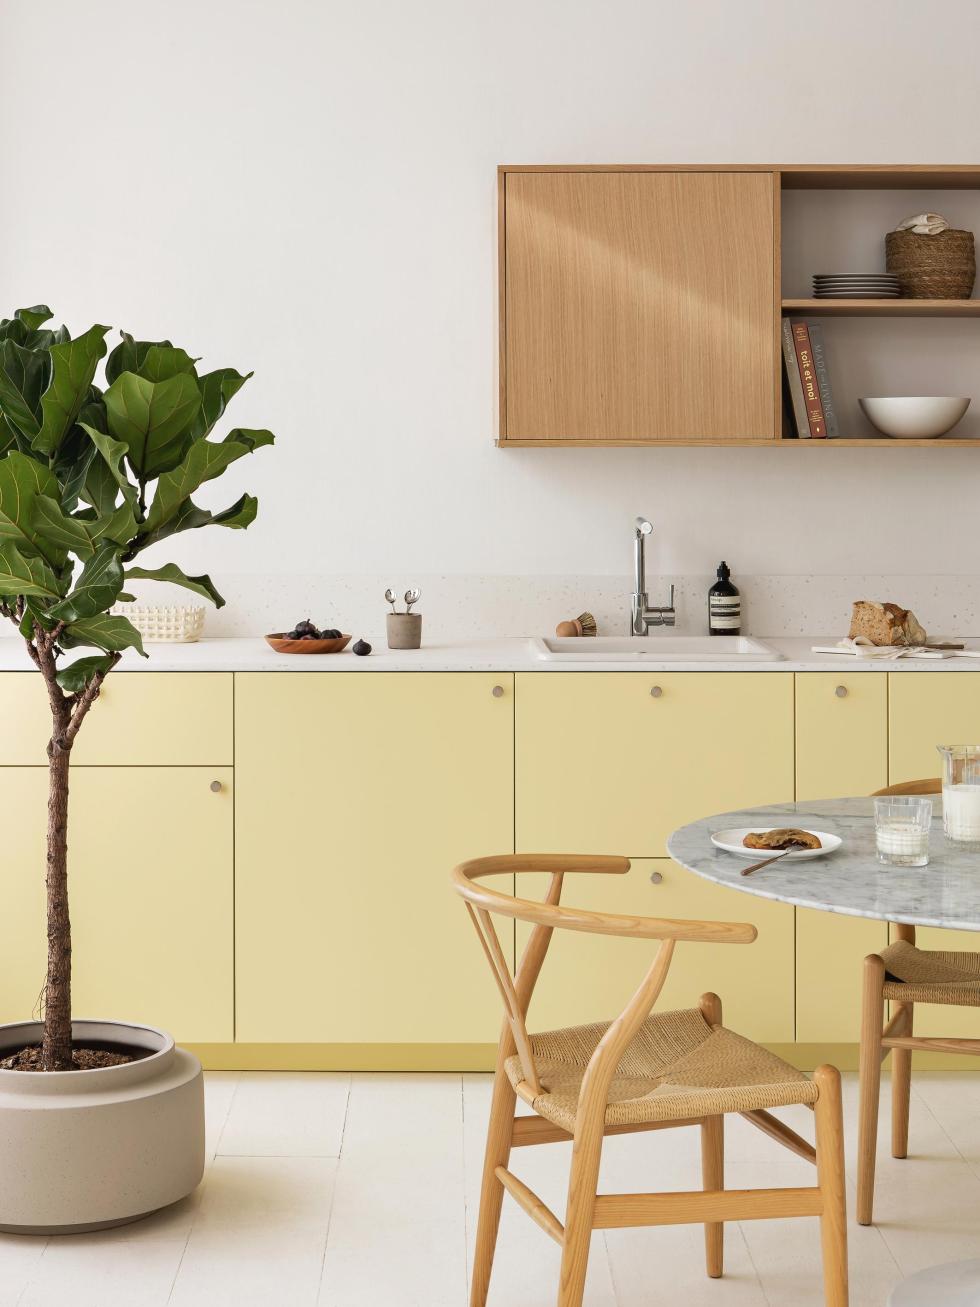 Lemonade kitchen designed by Plum studio - ⓒ Hervé Goluza for Plum